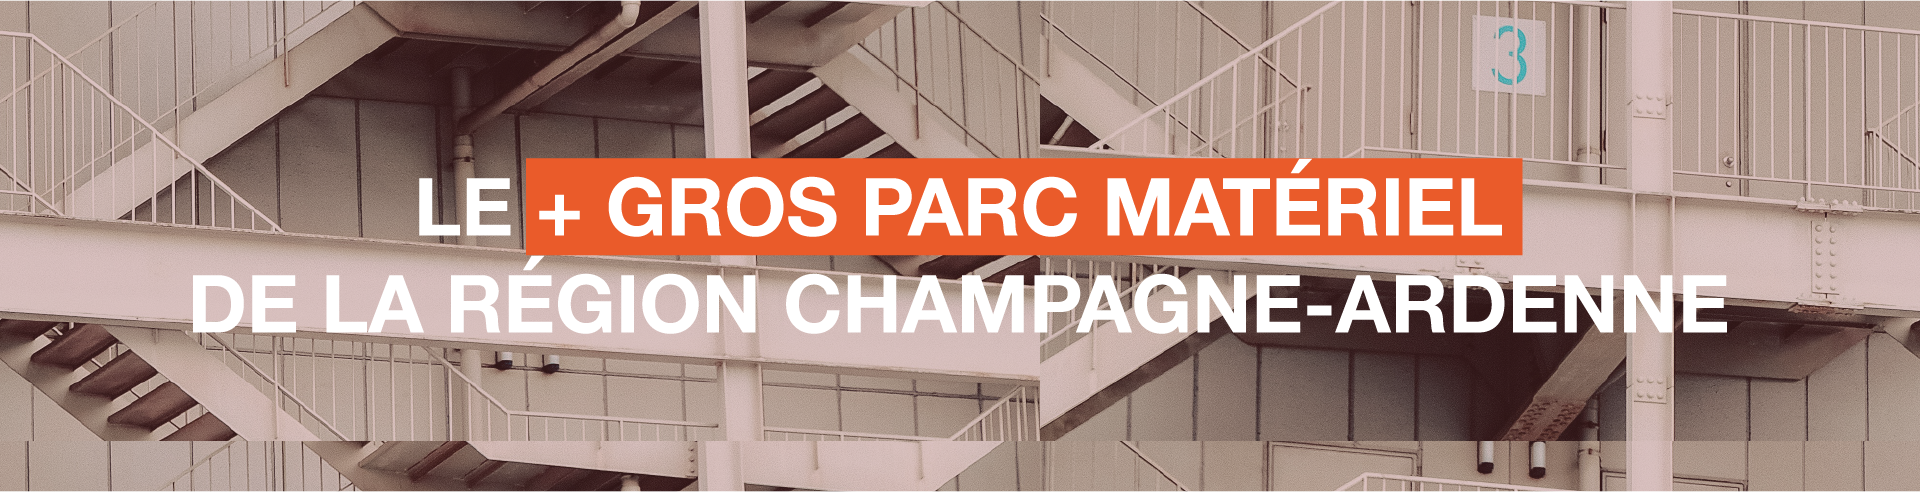 Le + GROS PARC MATÉRIEL de la région Champagne-Ardenne